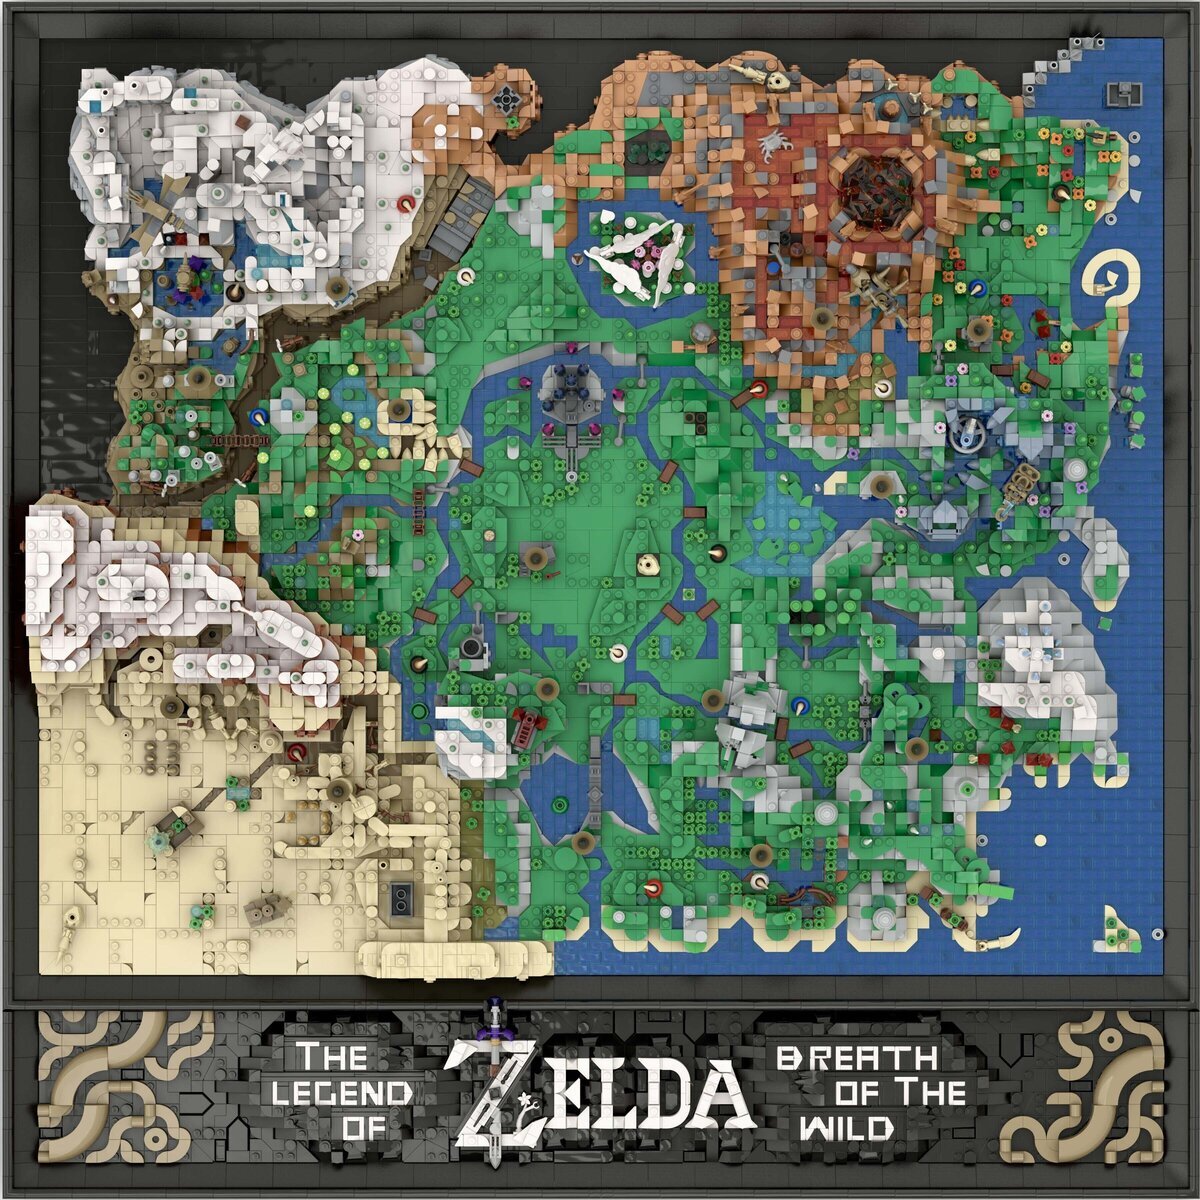 Han recreado el mapa de Zelda Breath of the Wild con más de 14000 piezas de LEGO